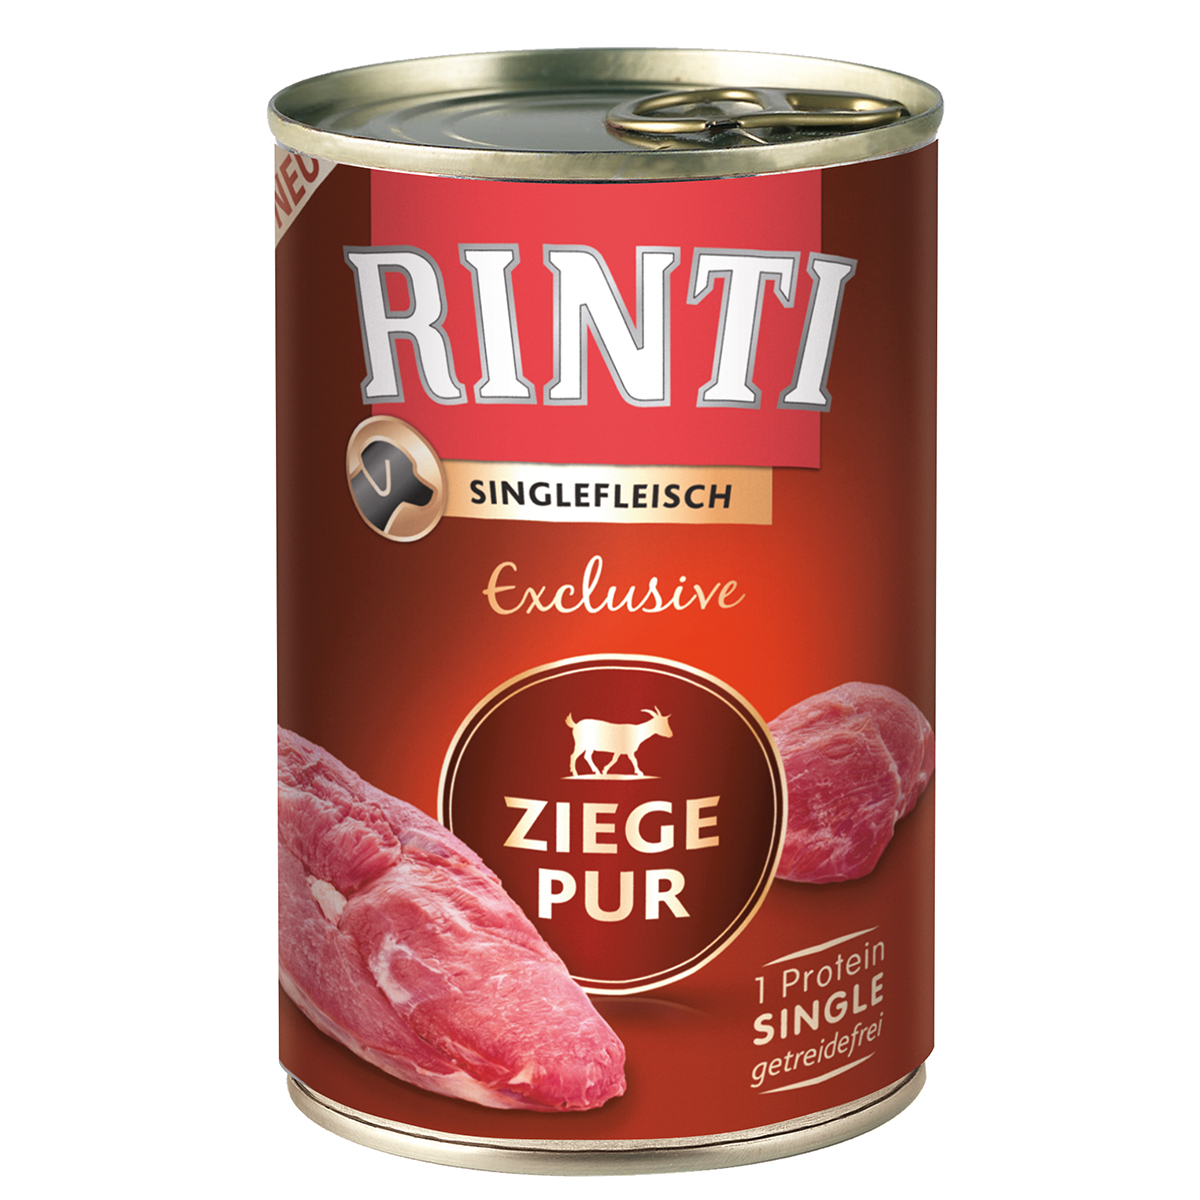 Rinti Singlefleisch Exclusive Ziege pur 24x400g von Rinti